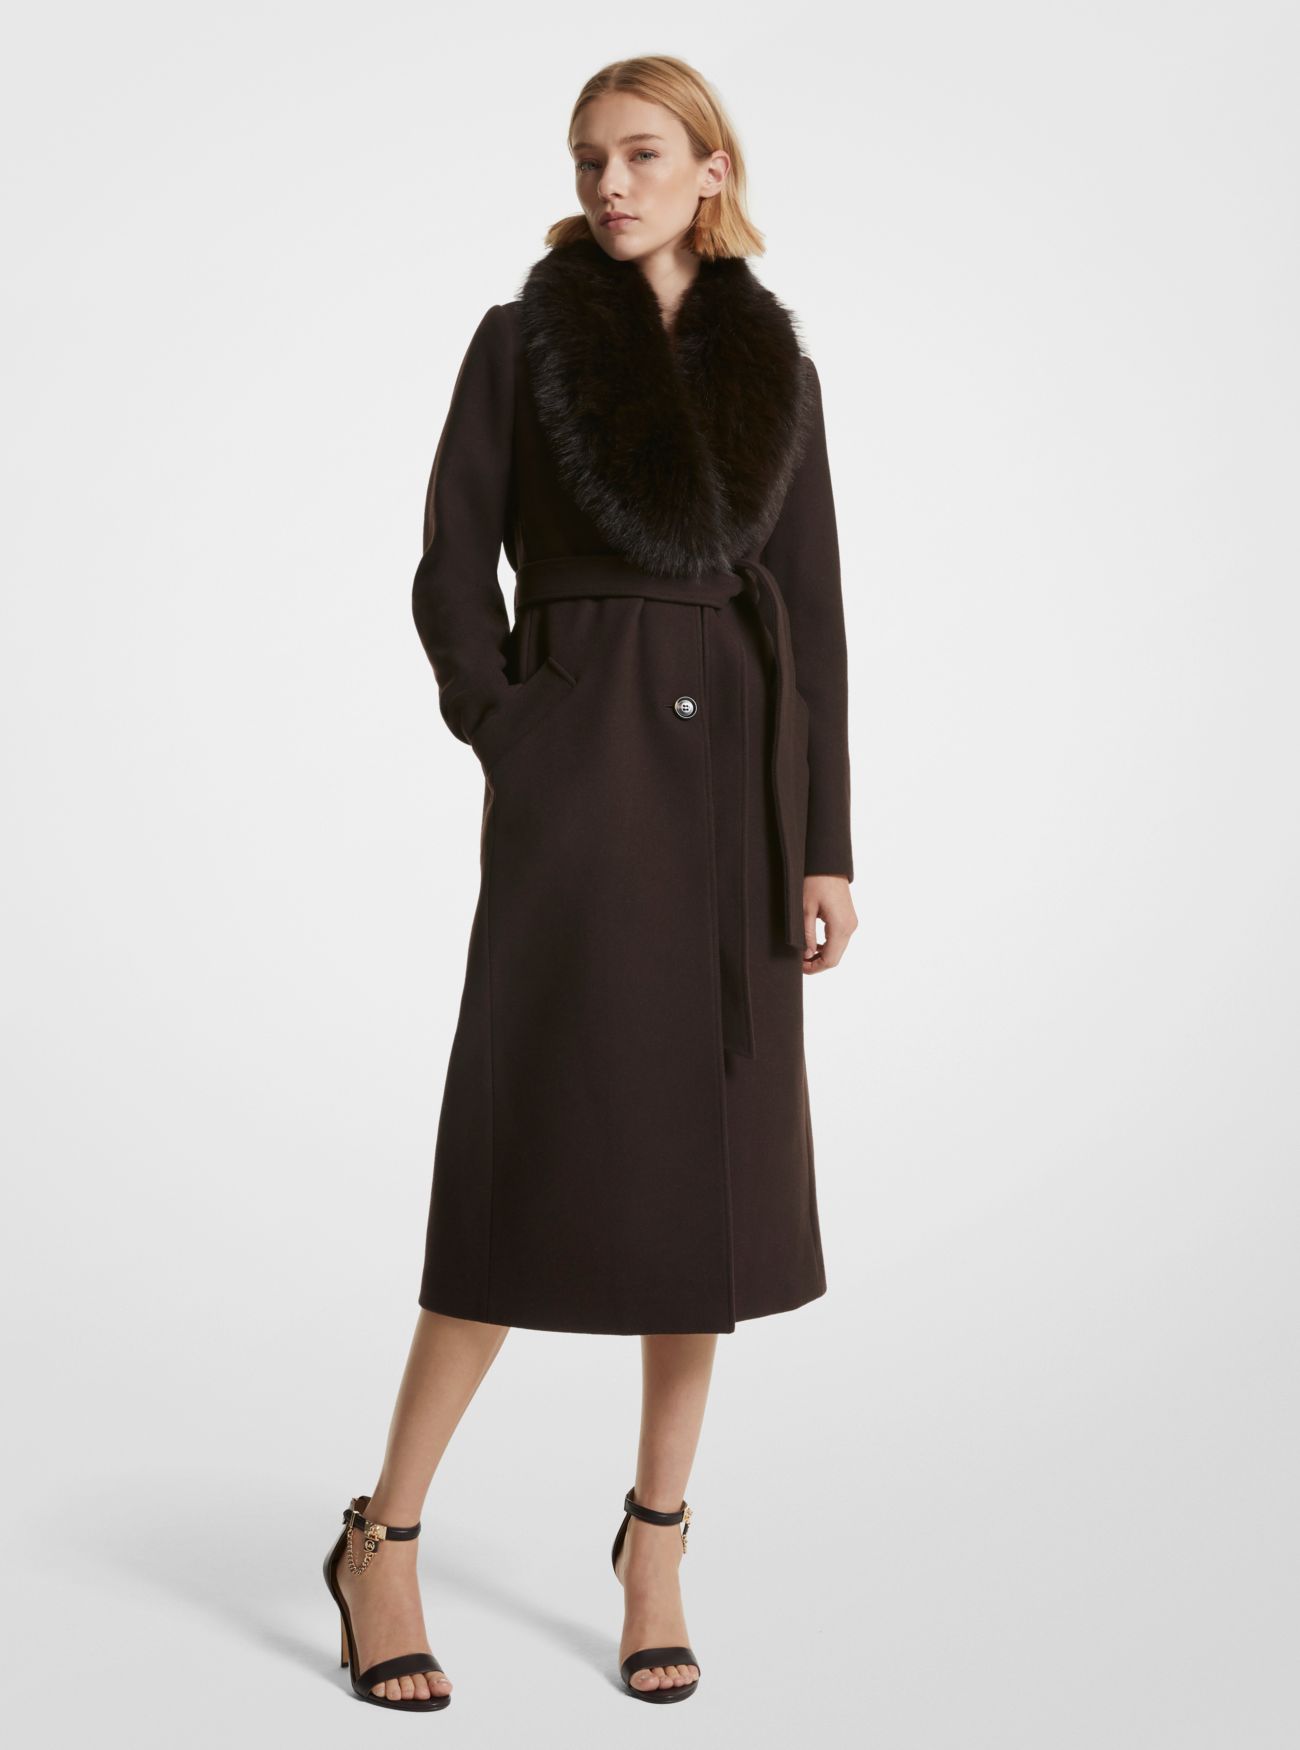 MK Faux Fur Trim Wool Blend Coat - Chocolate - Michael Kors